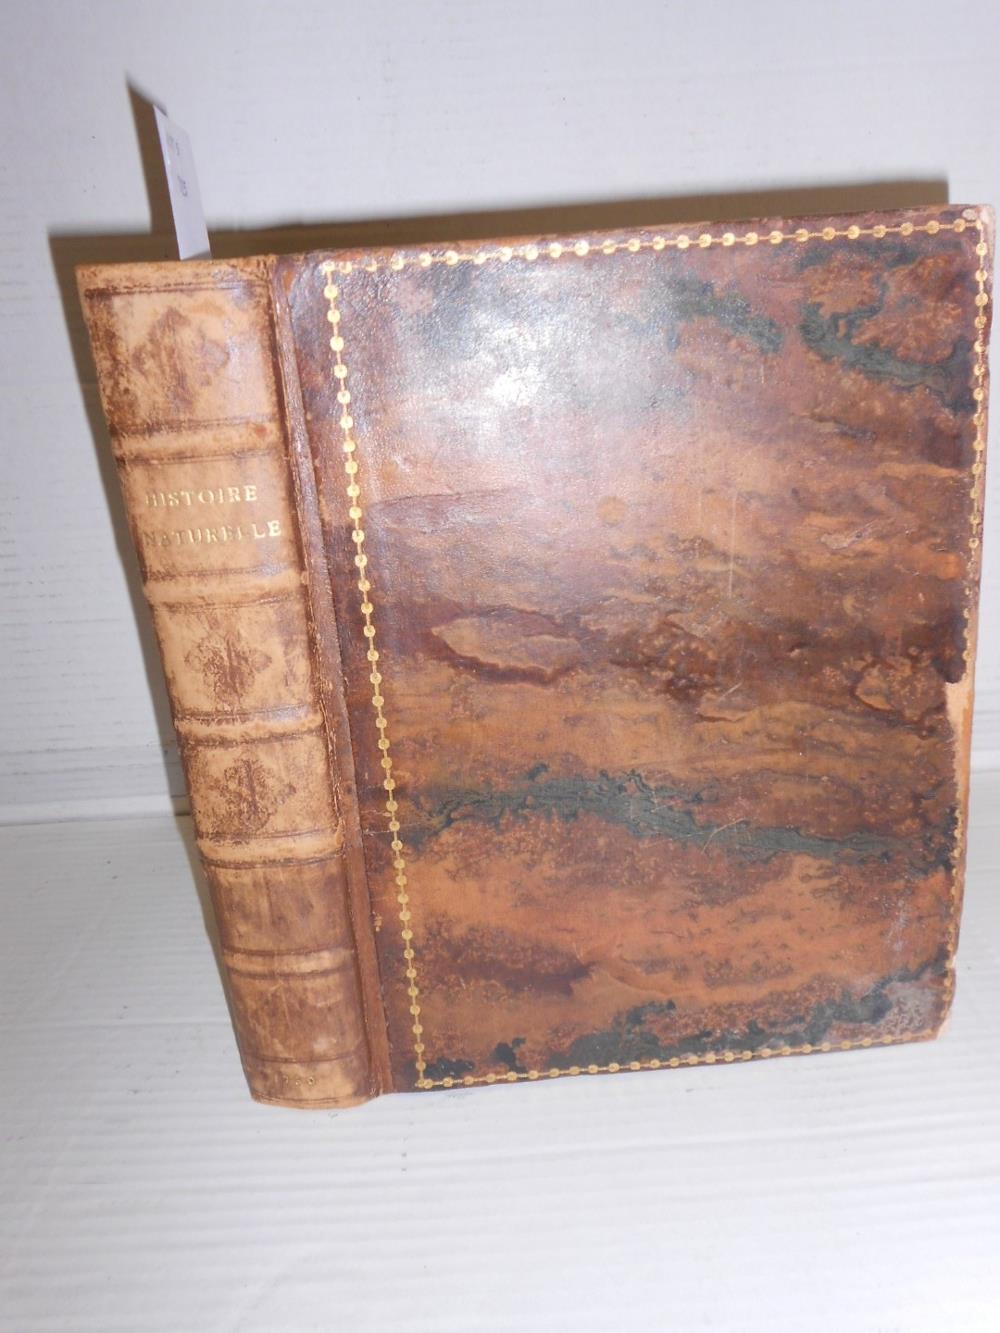 BUFFON (G L L, Comte de) Histoire Naturelle, Paris: L'Imprimerie Royale, 1750, 4to, vol. III only,